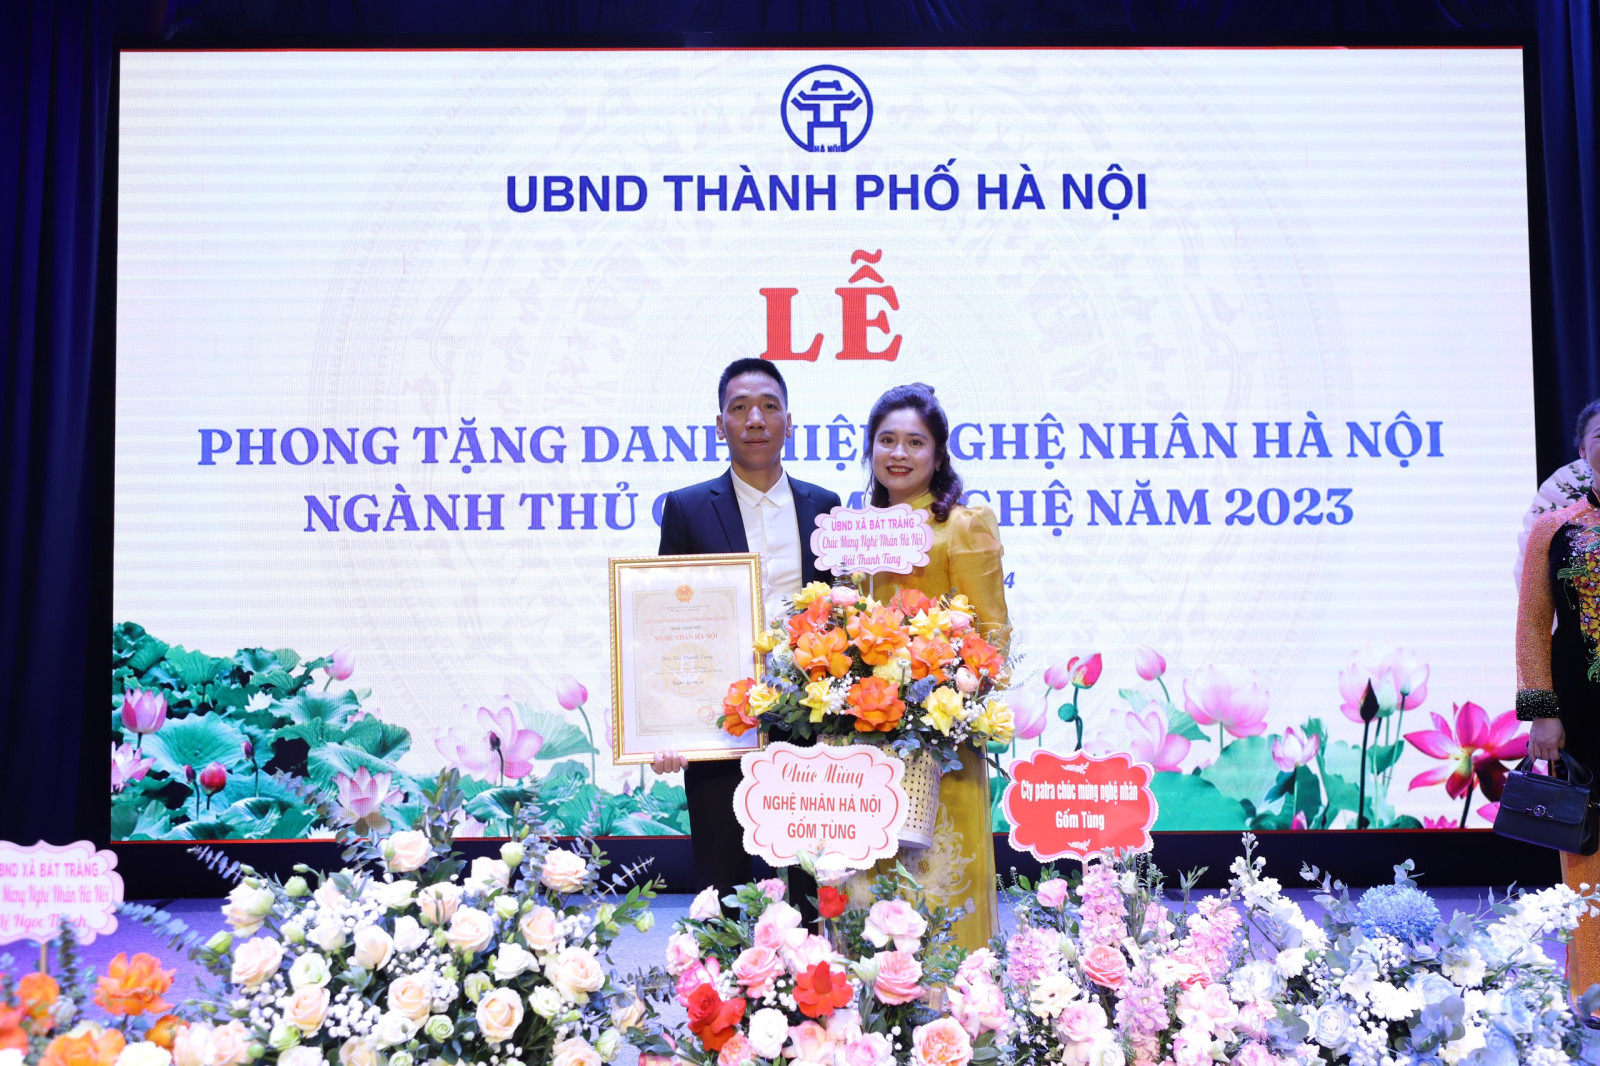 Nghệ nhân Bùi Thanh Tùng được phong tặng danh hiệu Nghệ nhân Hà Nội - Ảnh 5